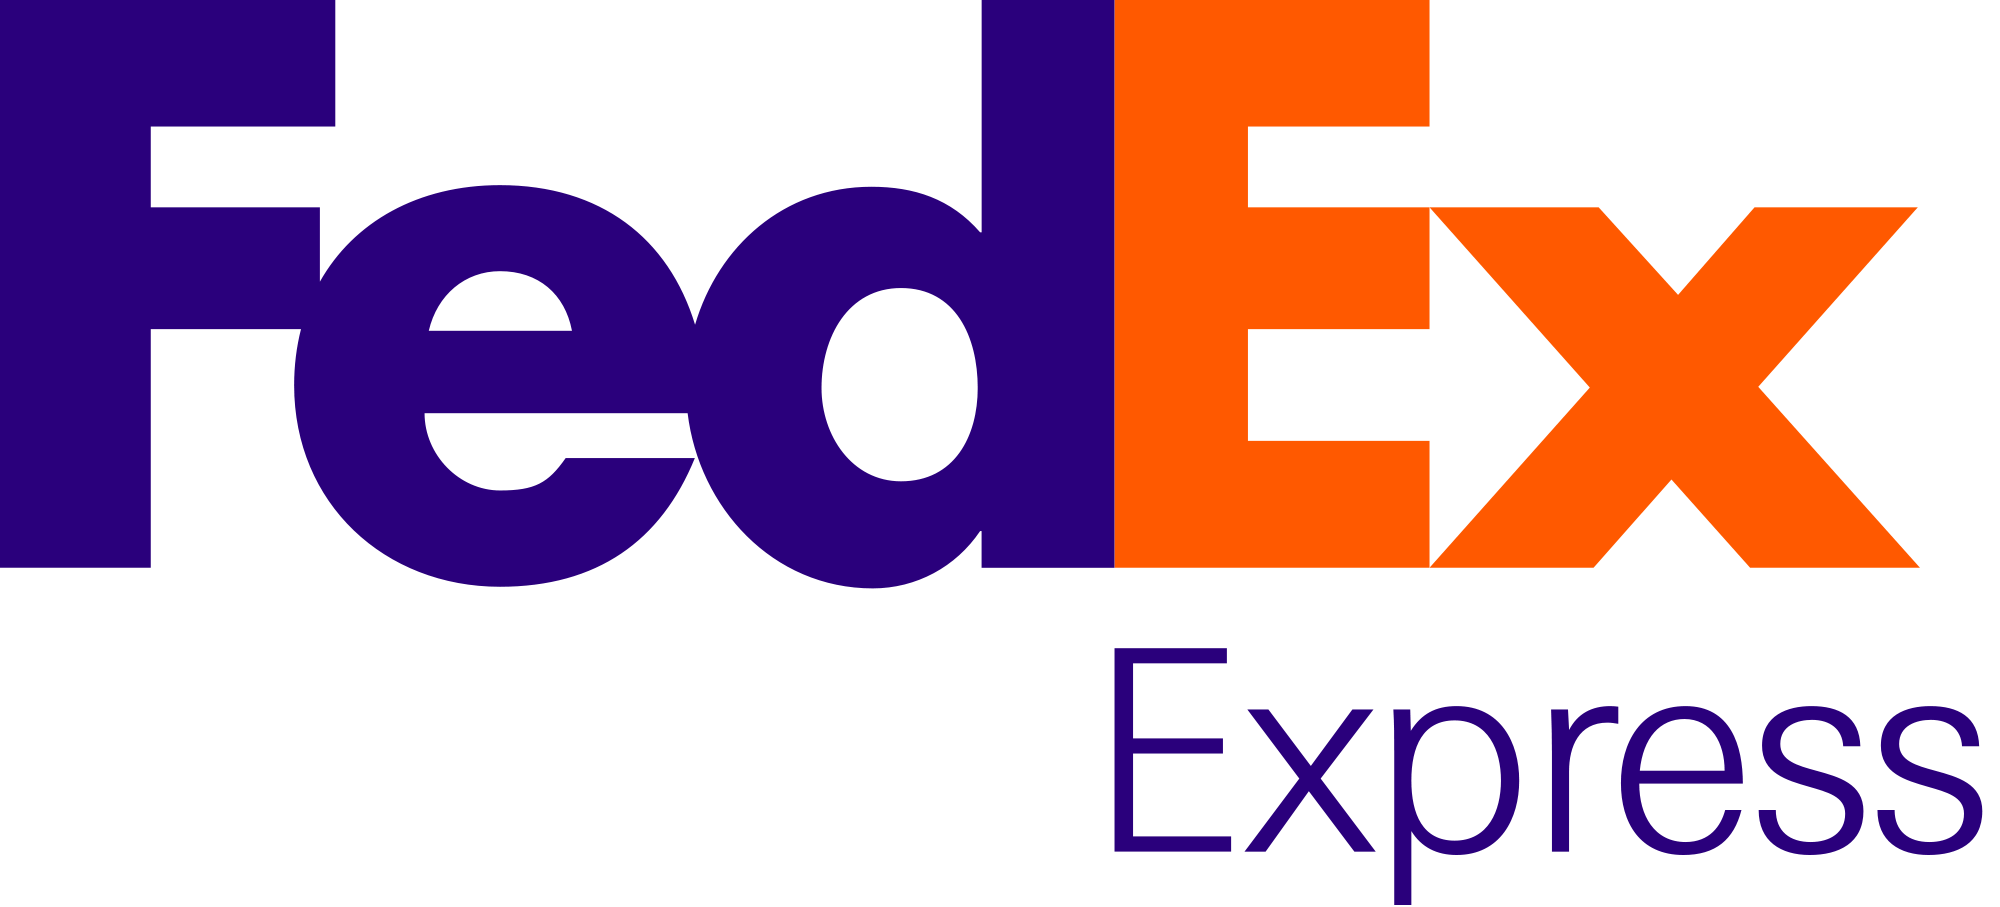 FedEx Logo - FedEx Express.svg